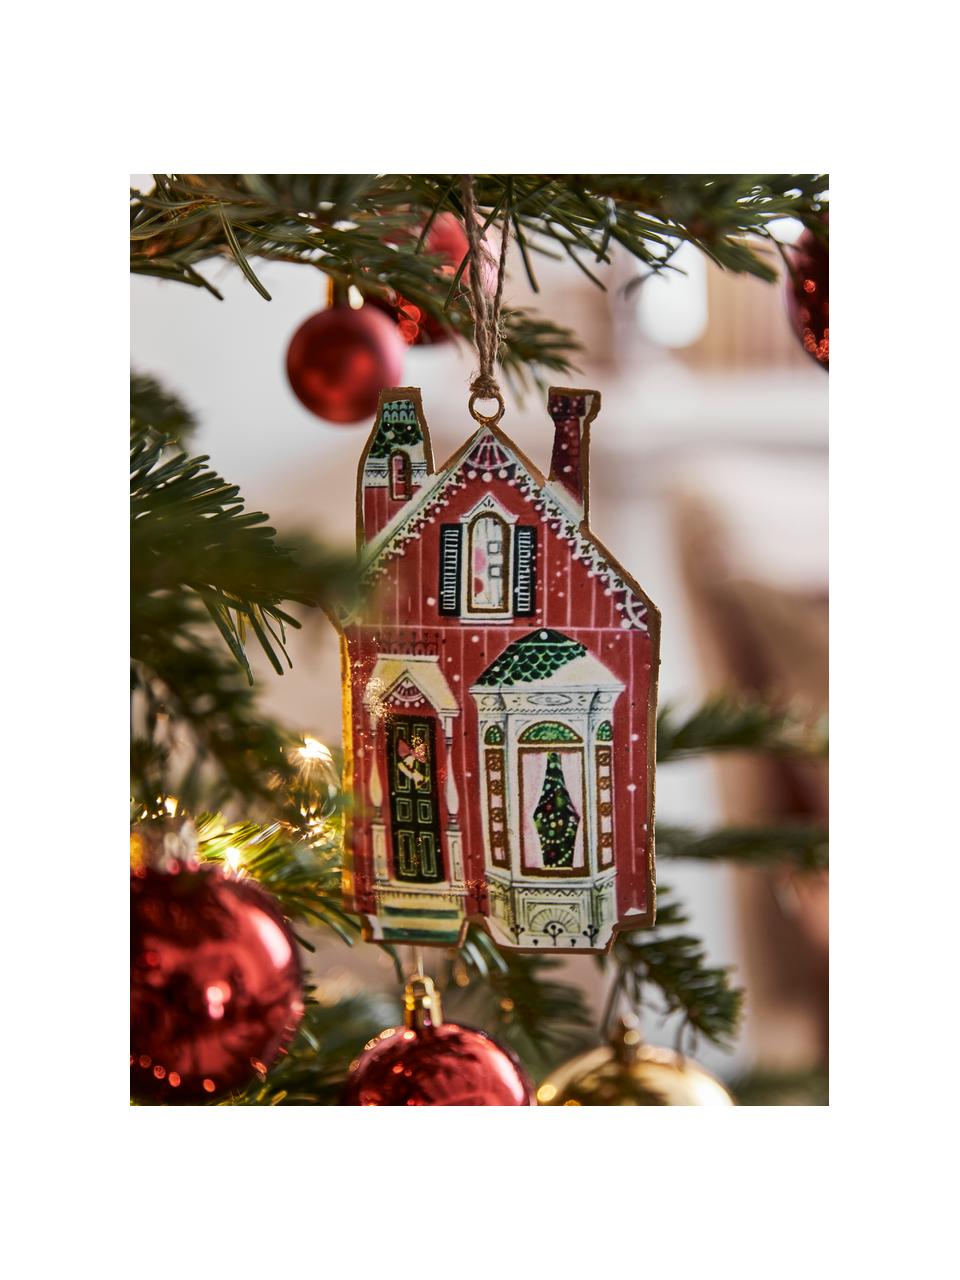 Kerstboomhanger Houses, set van 4, Metaal, Roodtinten, groentinten, Set met verschillende formaten